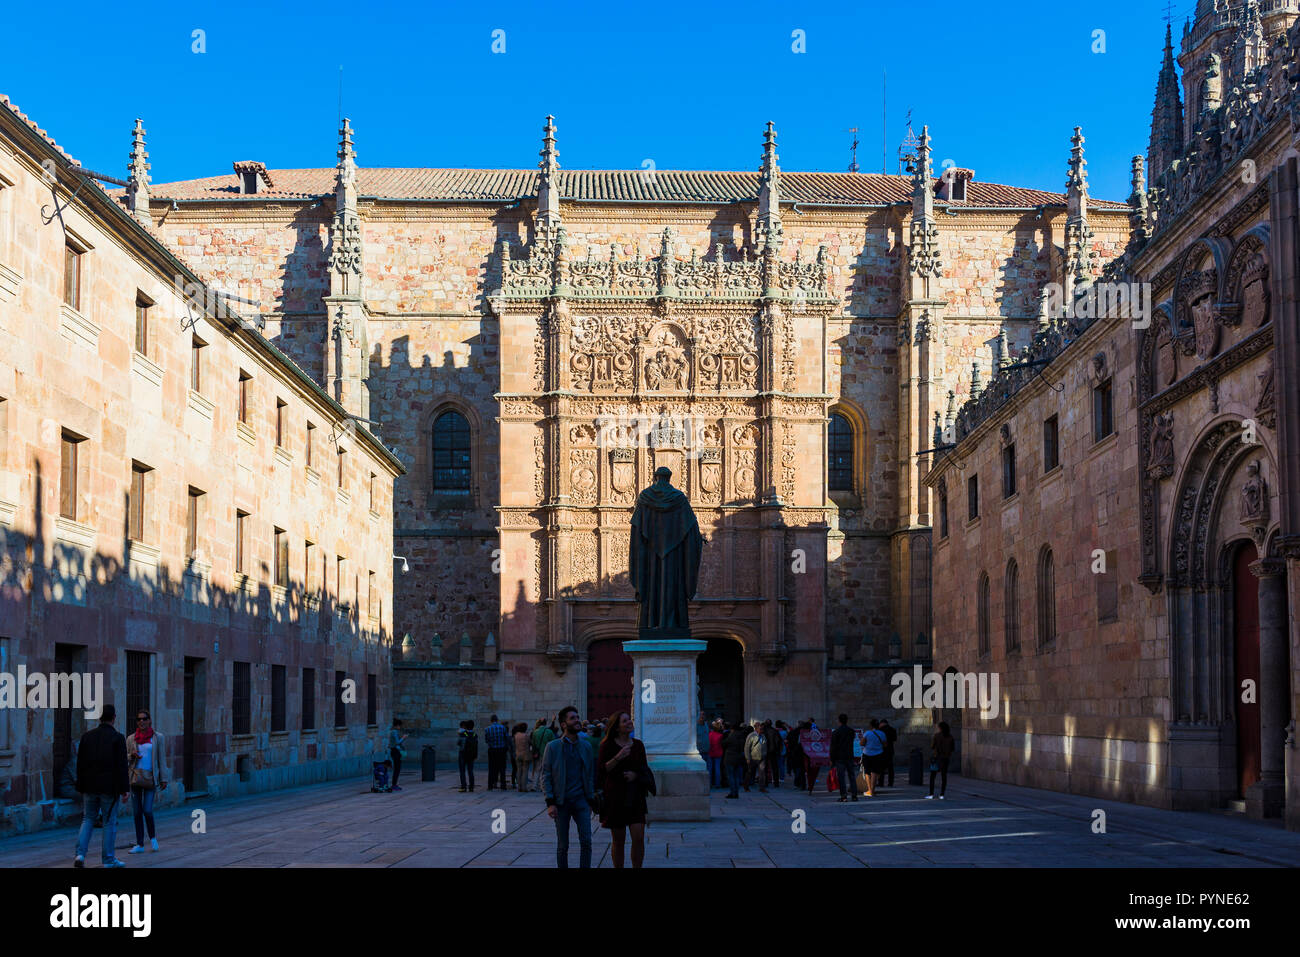 Fachada plateresca de la Universidad ante una estatua de Fray Luis de León. Salamanca, Castilla y León, España, Europa Foto de stock